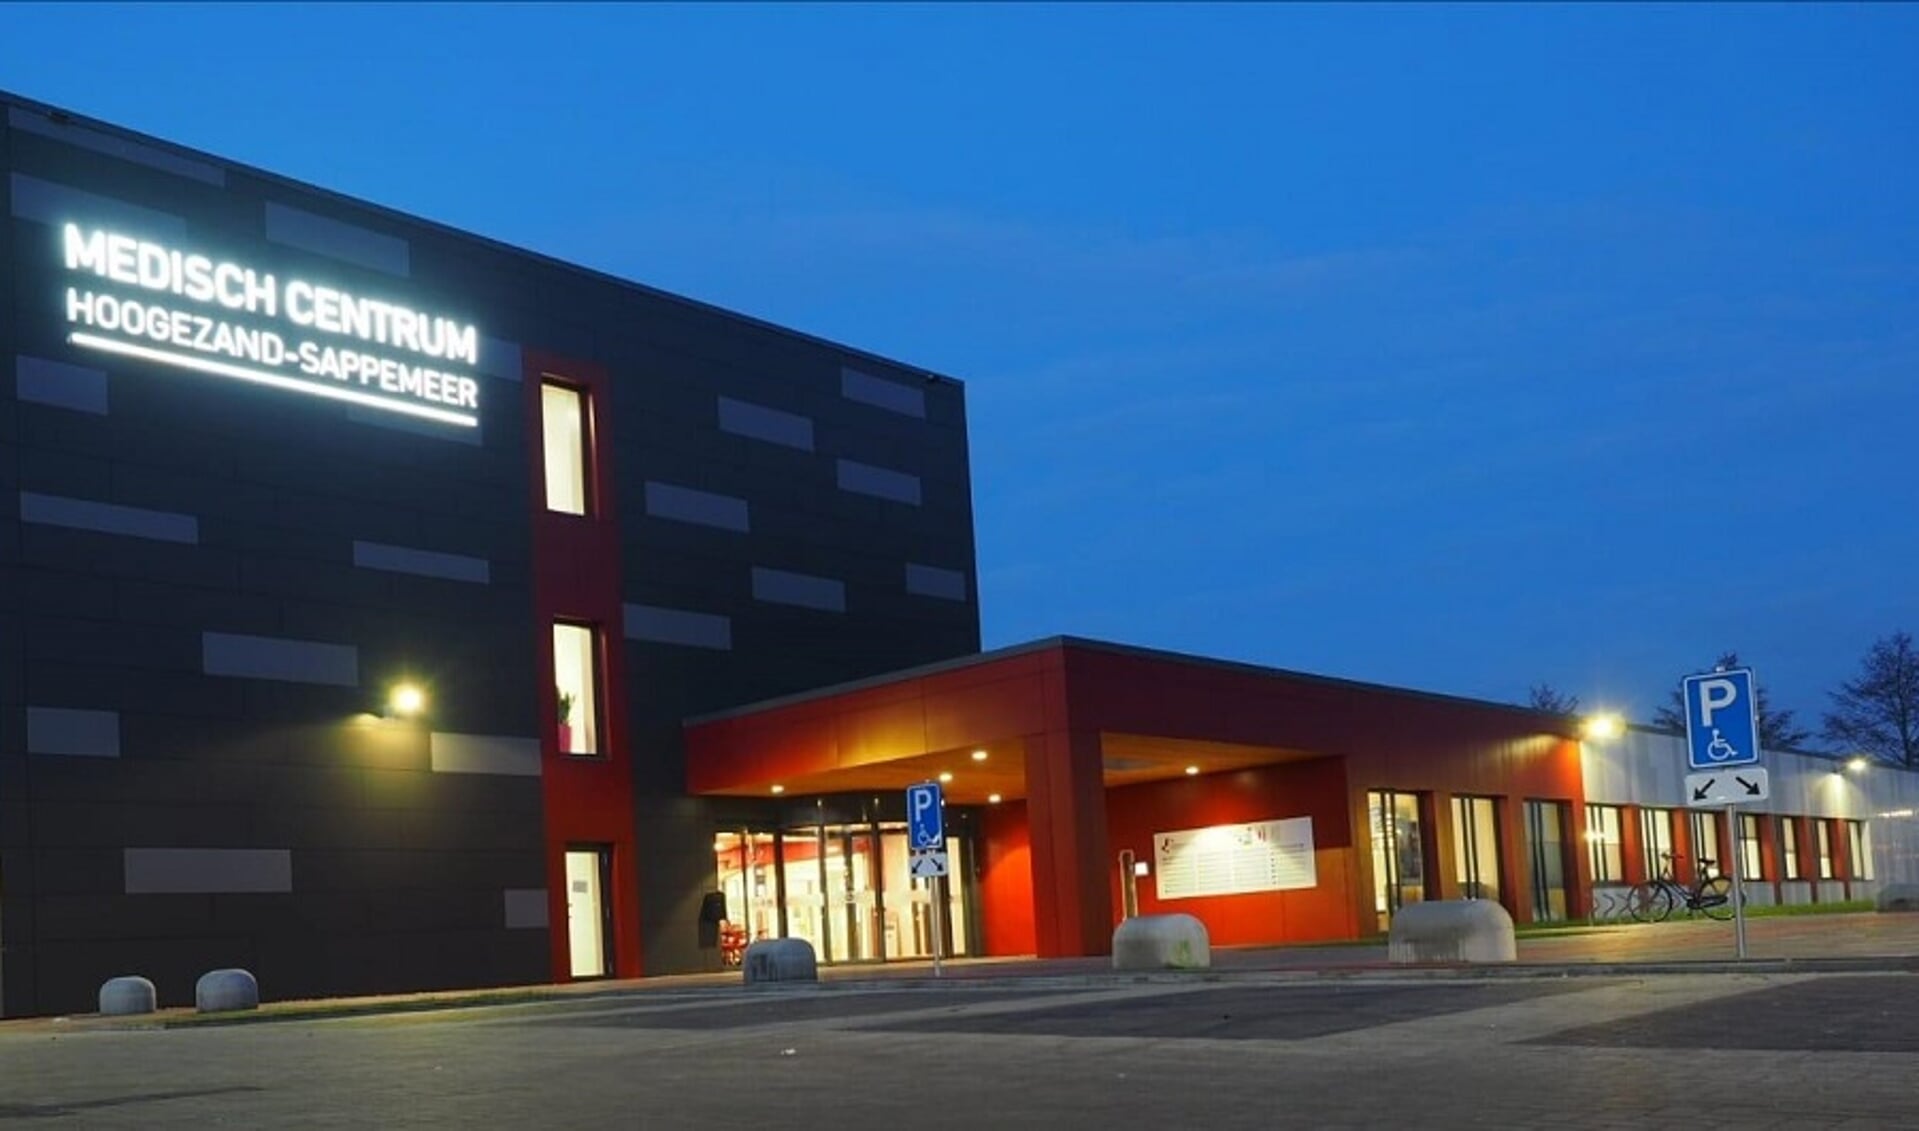 Apotheek Medisch Centrum Hoogezand-Sappemeer is opnieuw gekozen tot beste apotheek van Nederland.